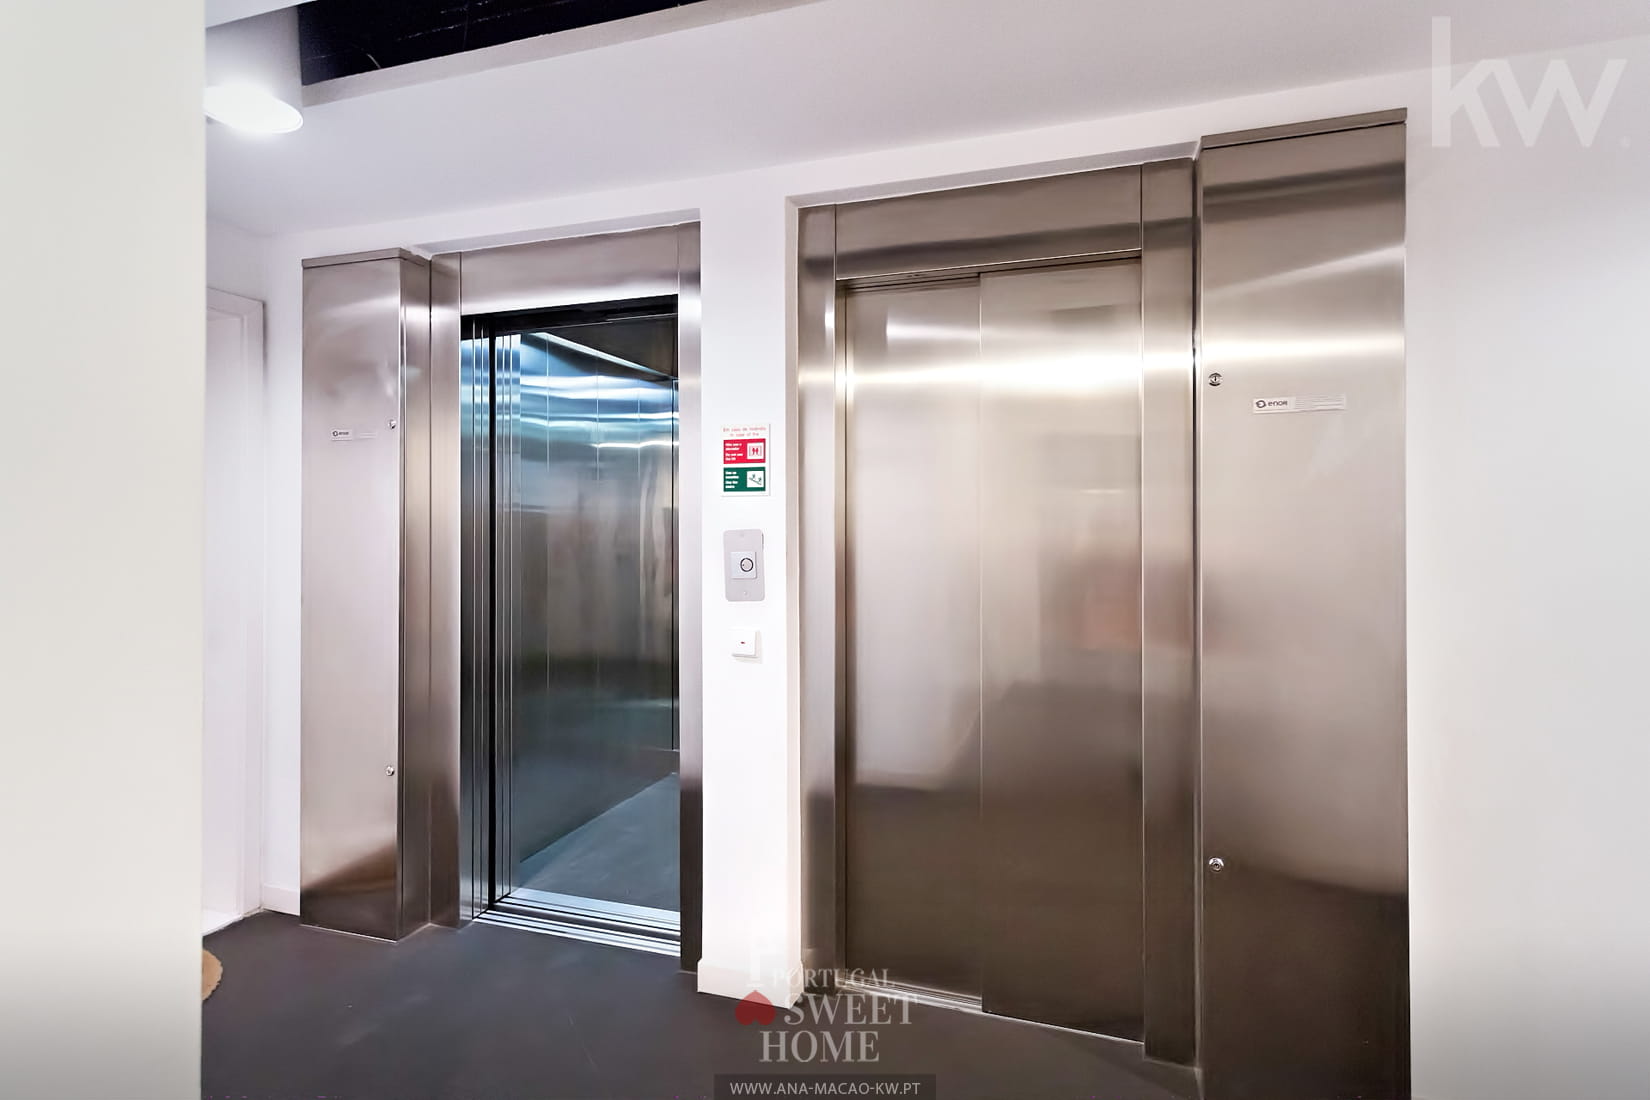 2 elevators in the building